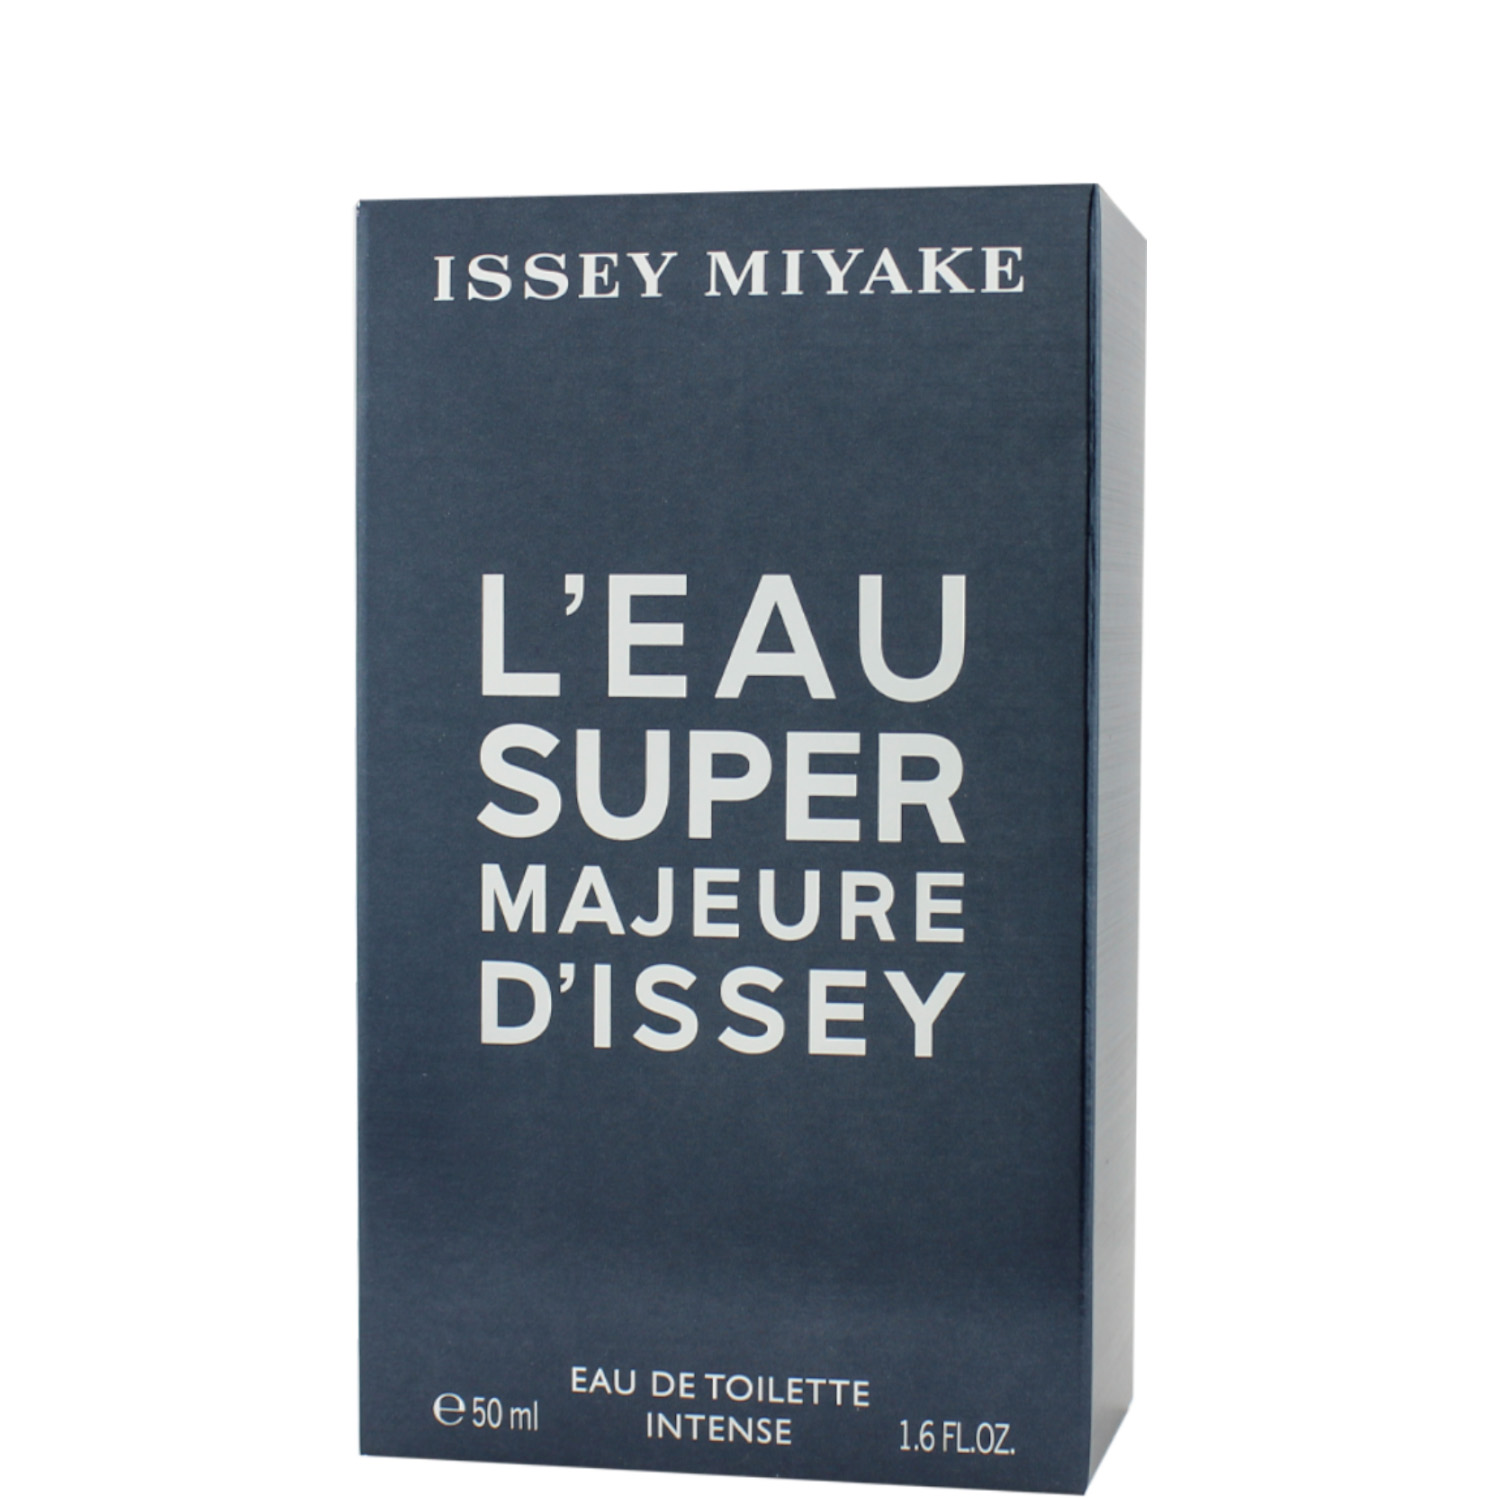 Issey Miyake L'Eau Super Majeure d'Issey Intense Eau de Toilette 50ml 